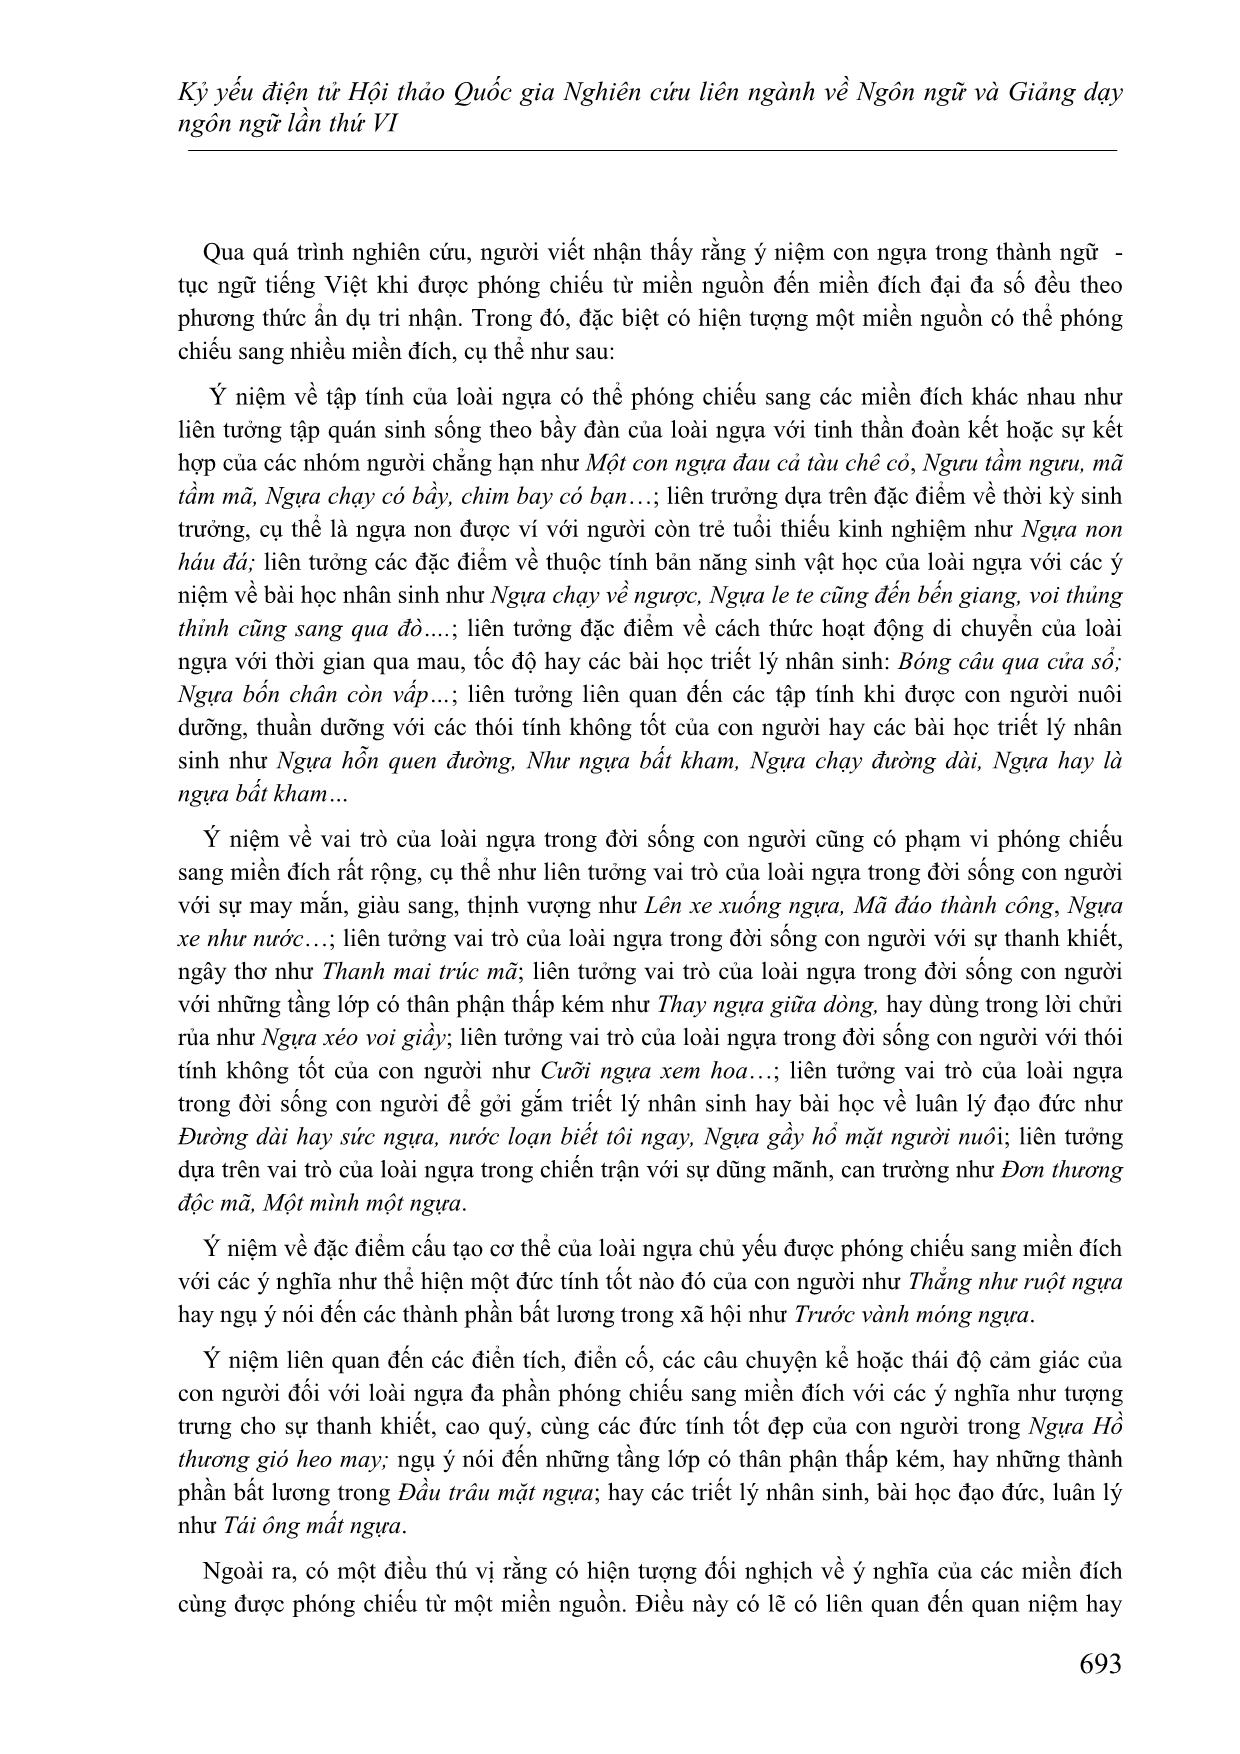 Một cách kiến giải về hình ảnh con ngựa trong thành ngữ-Tục ngữ Tiếng Việt dưới góc nhìn ngôn ngữ học tri nhận trang 7